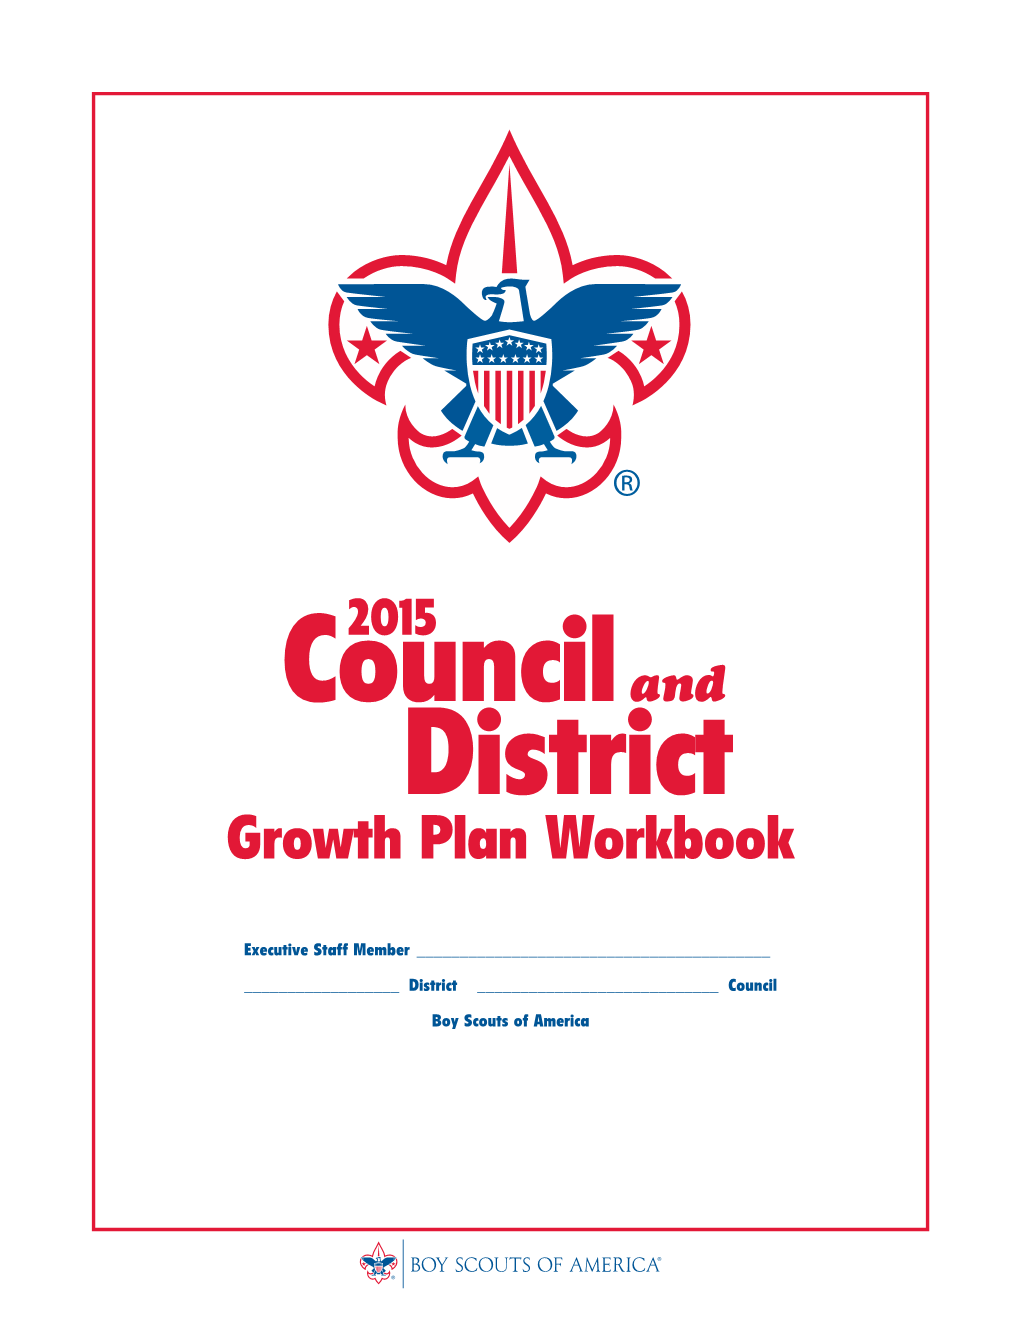 Growth Plan Workbook